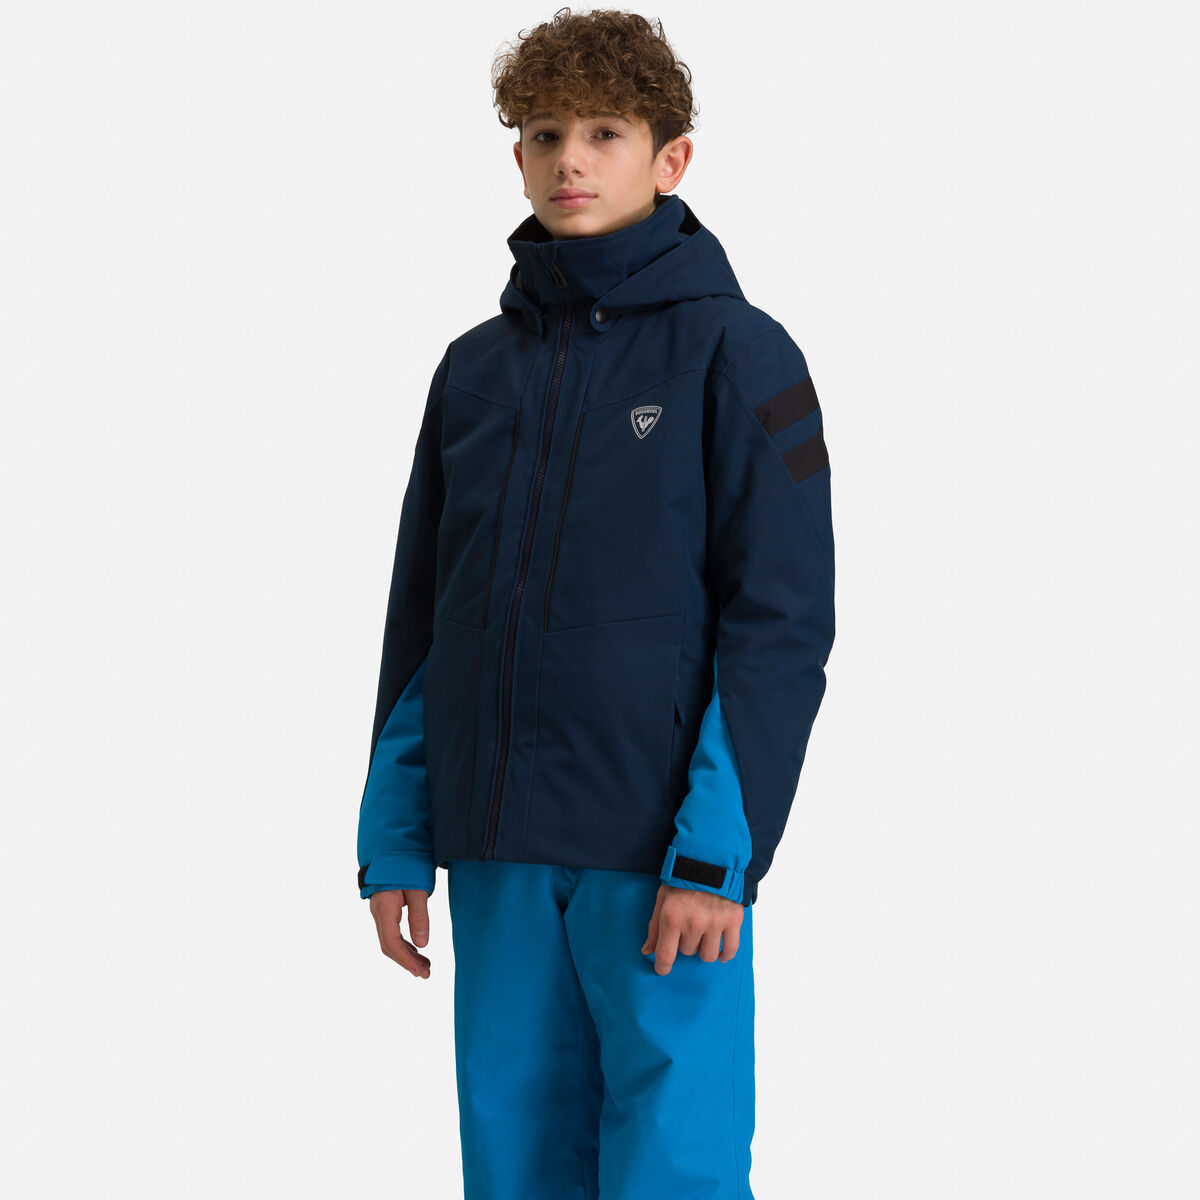 Boys' Ski Jacket